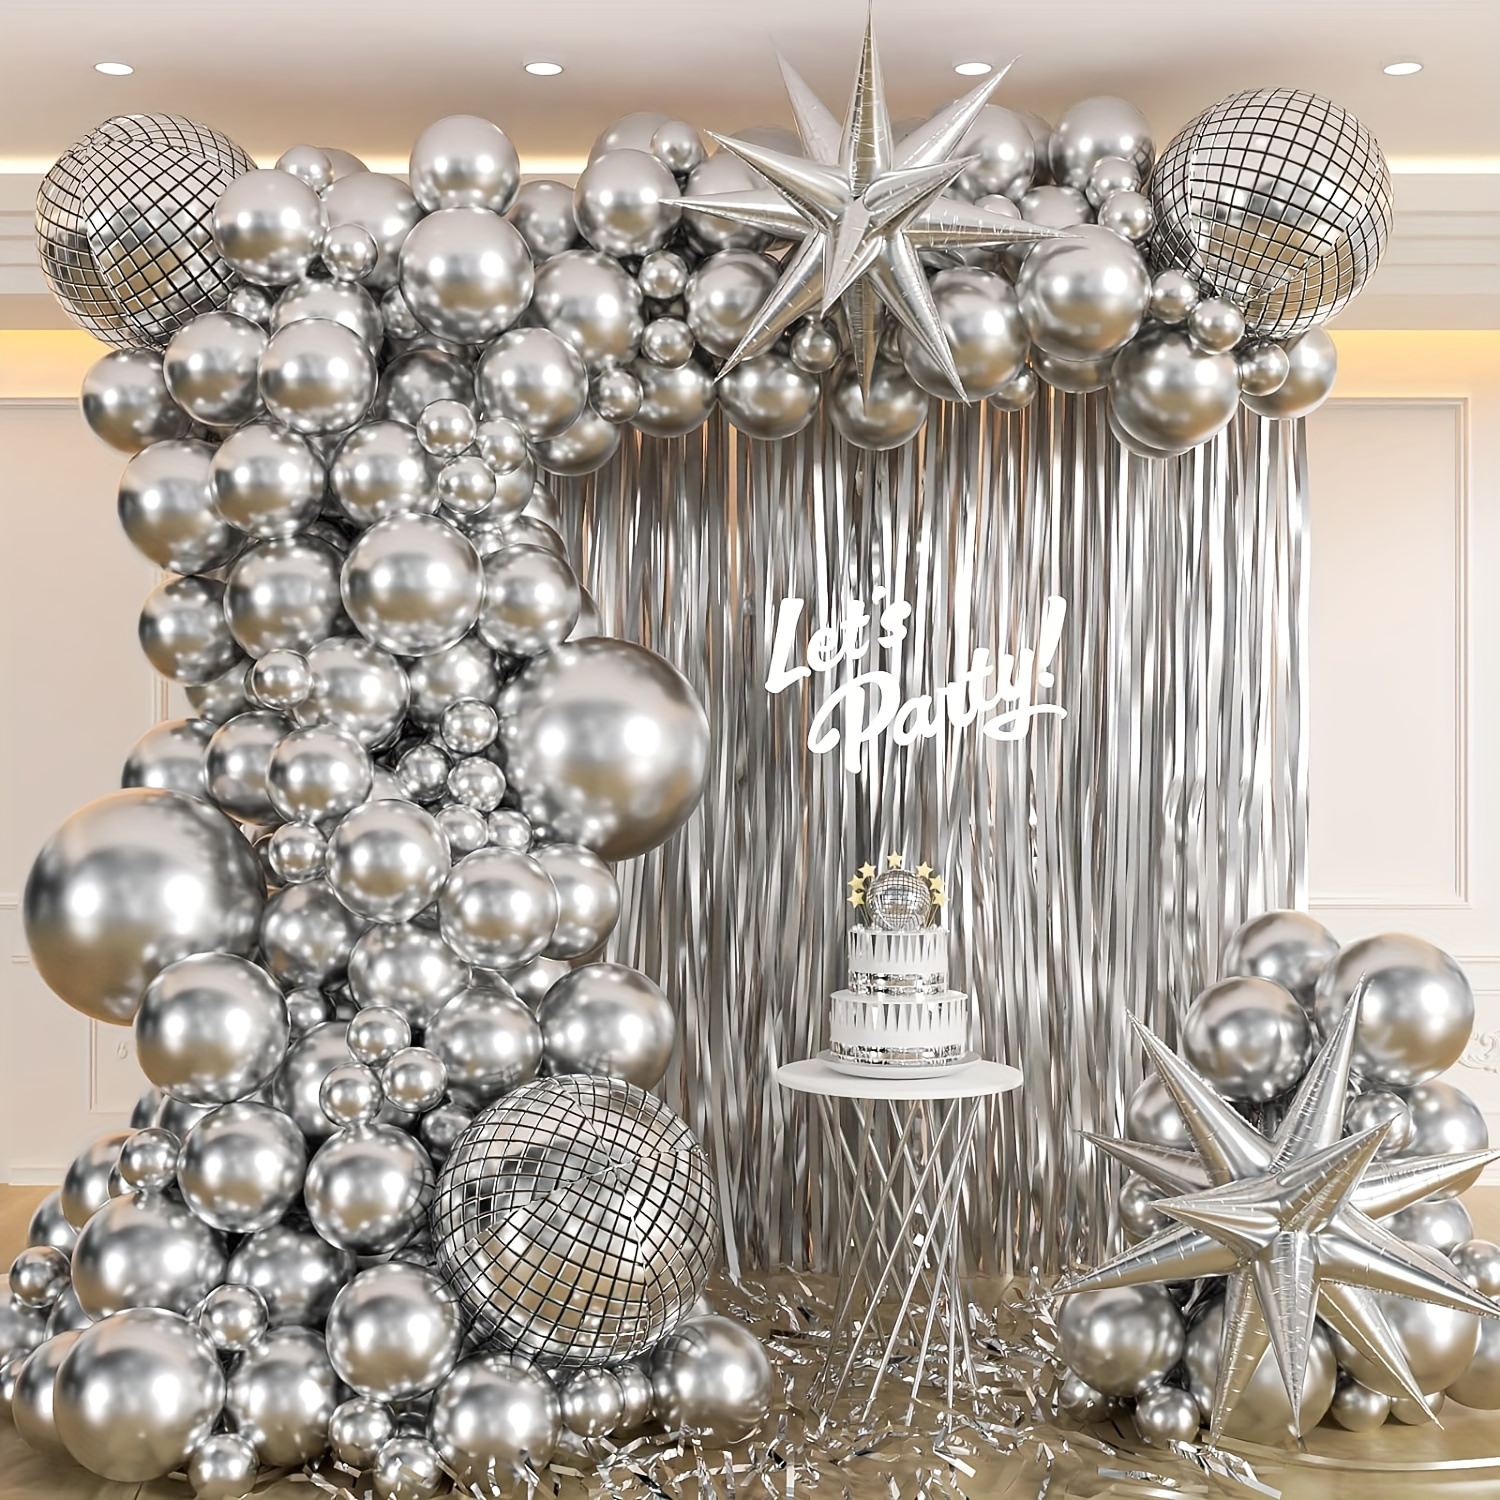 

119-piece Starburst Balloon Set For Disco Parties, Graduations & Weddings - Versatile Latex Balloons For Indoor Decor